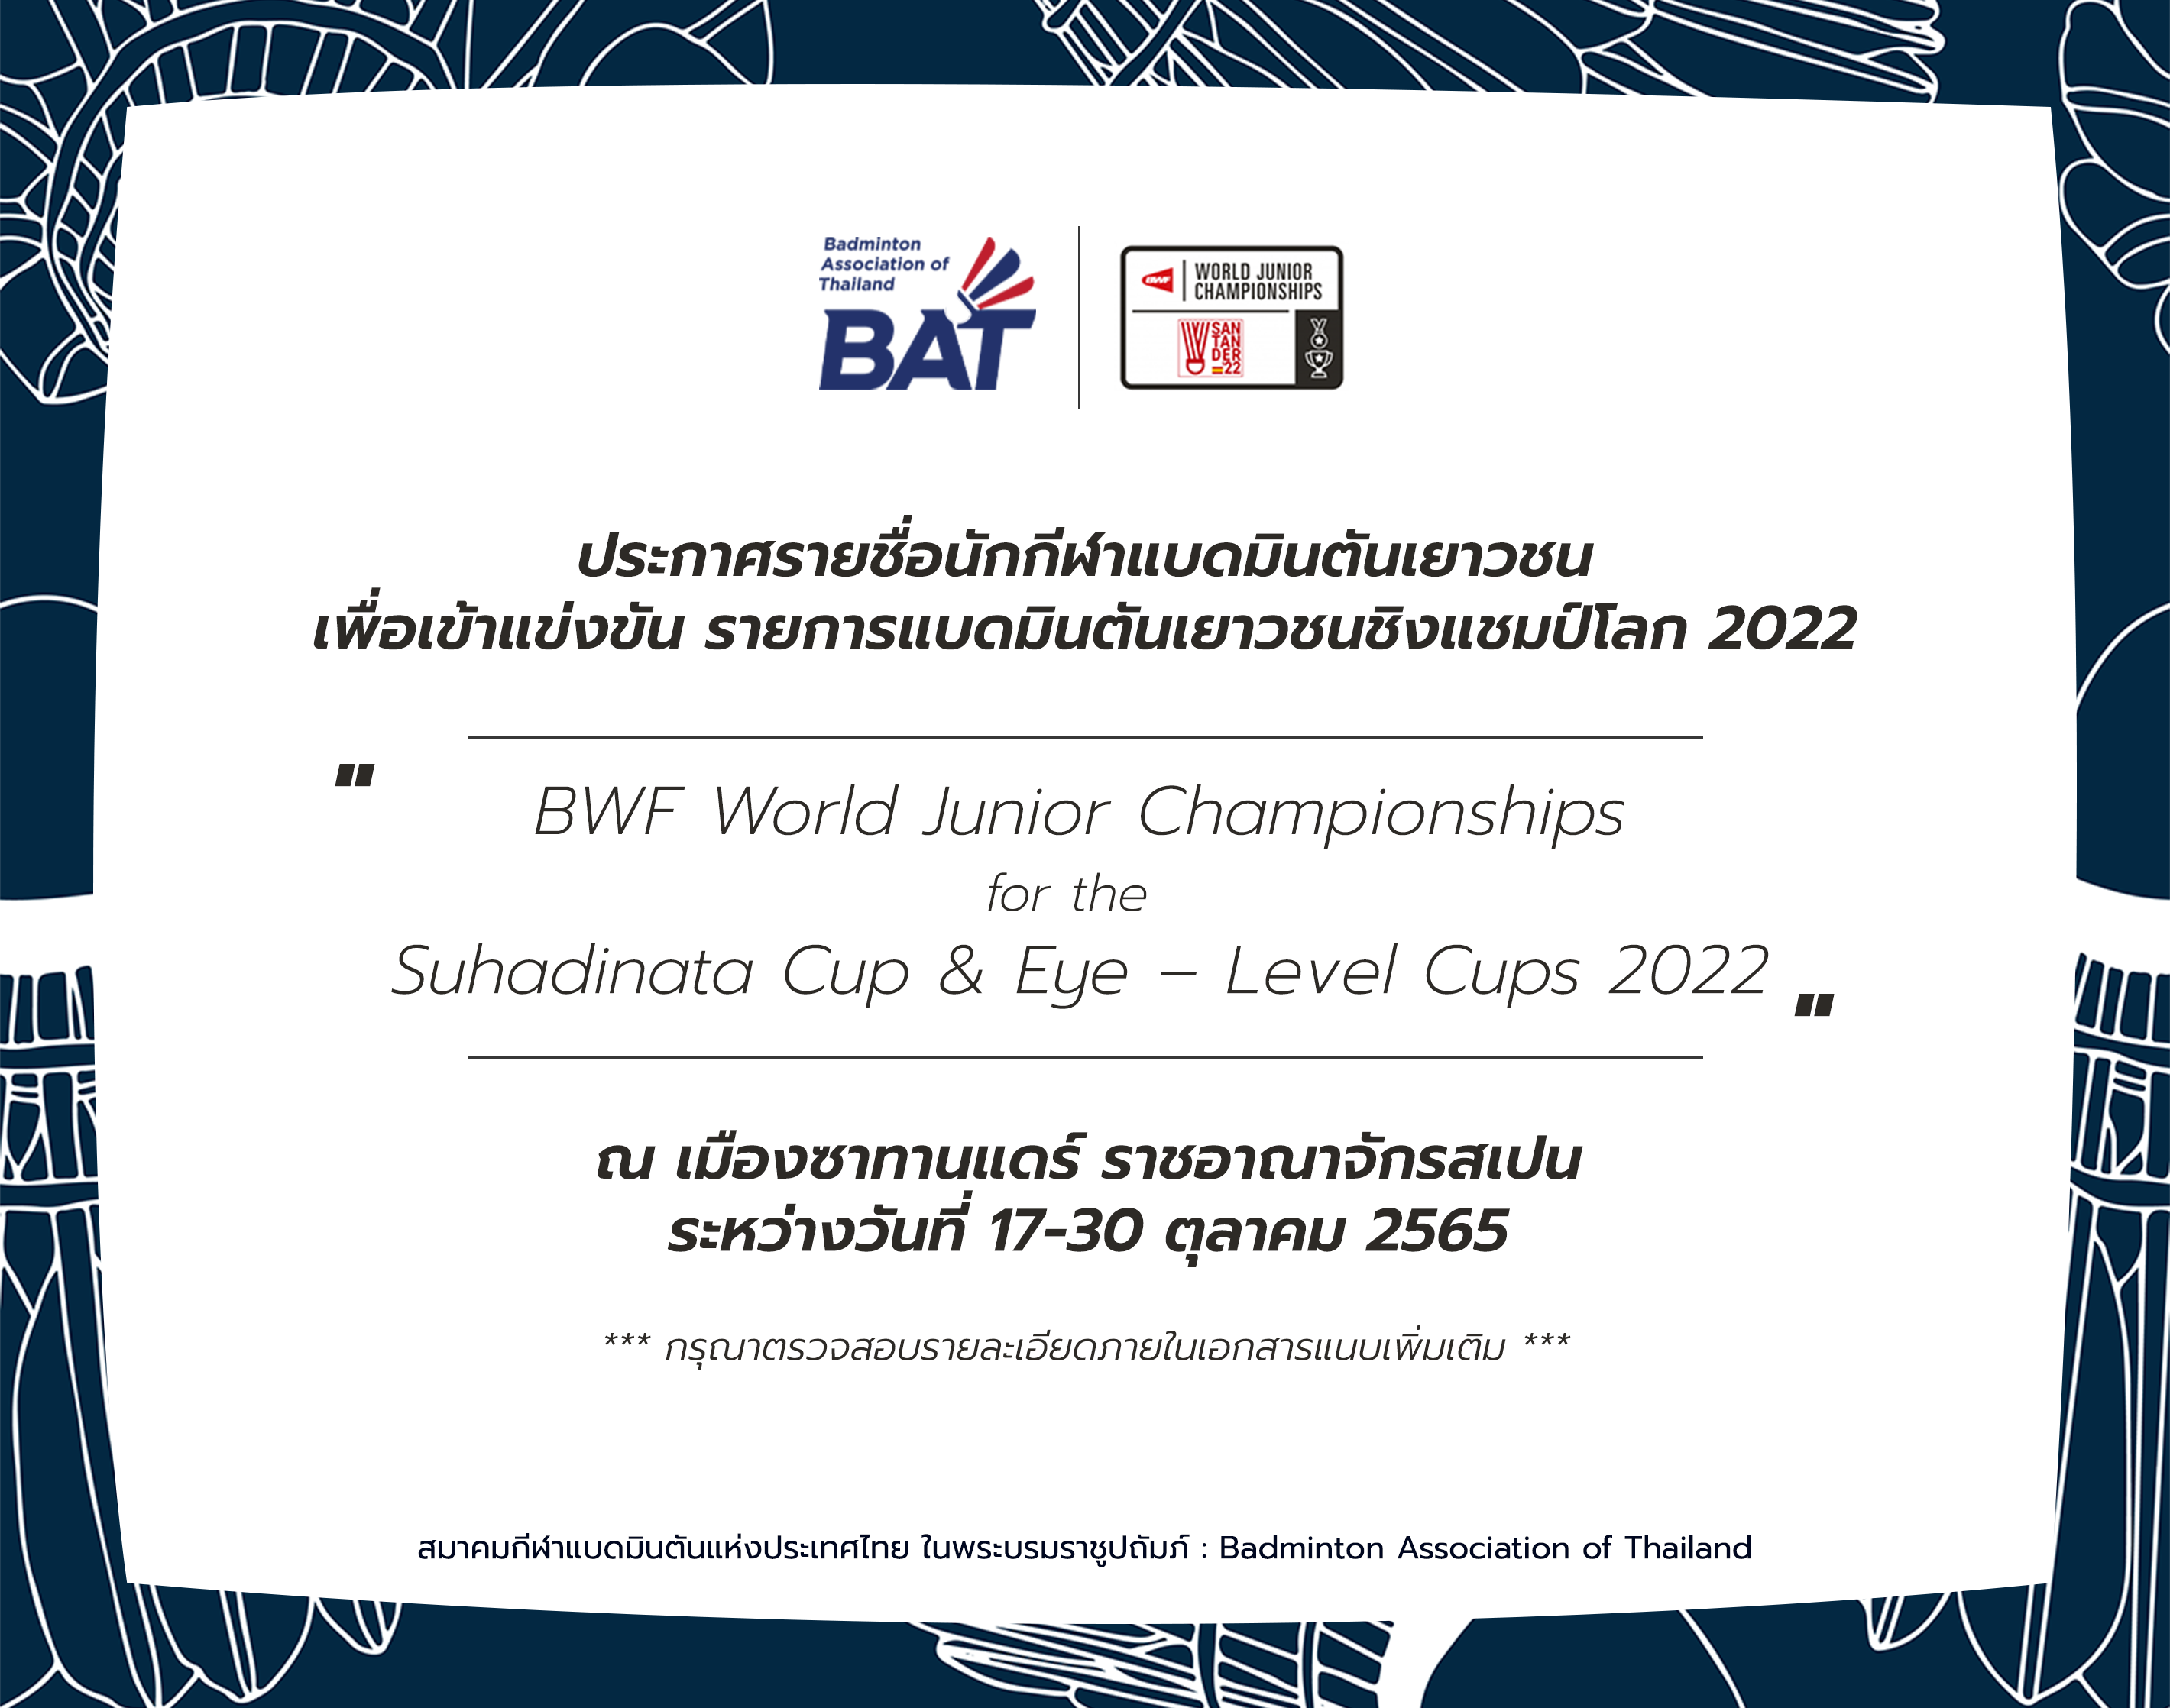 ประกาศรายชื่อนักกีฬาแบดมินตันเยาวชน เพื่อเข้าร่วมการแข่งขันรายการแบดมินตันเยาวชนชิงแชมป์โลก 2022